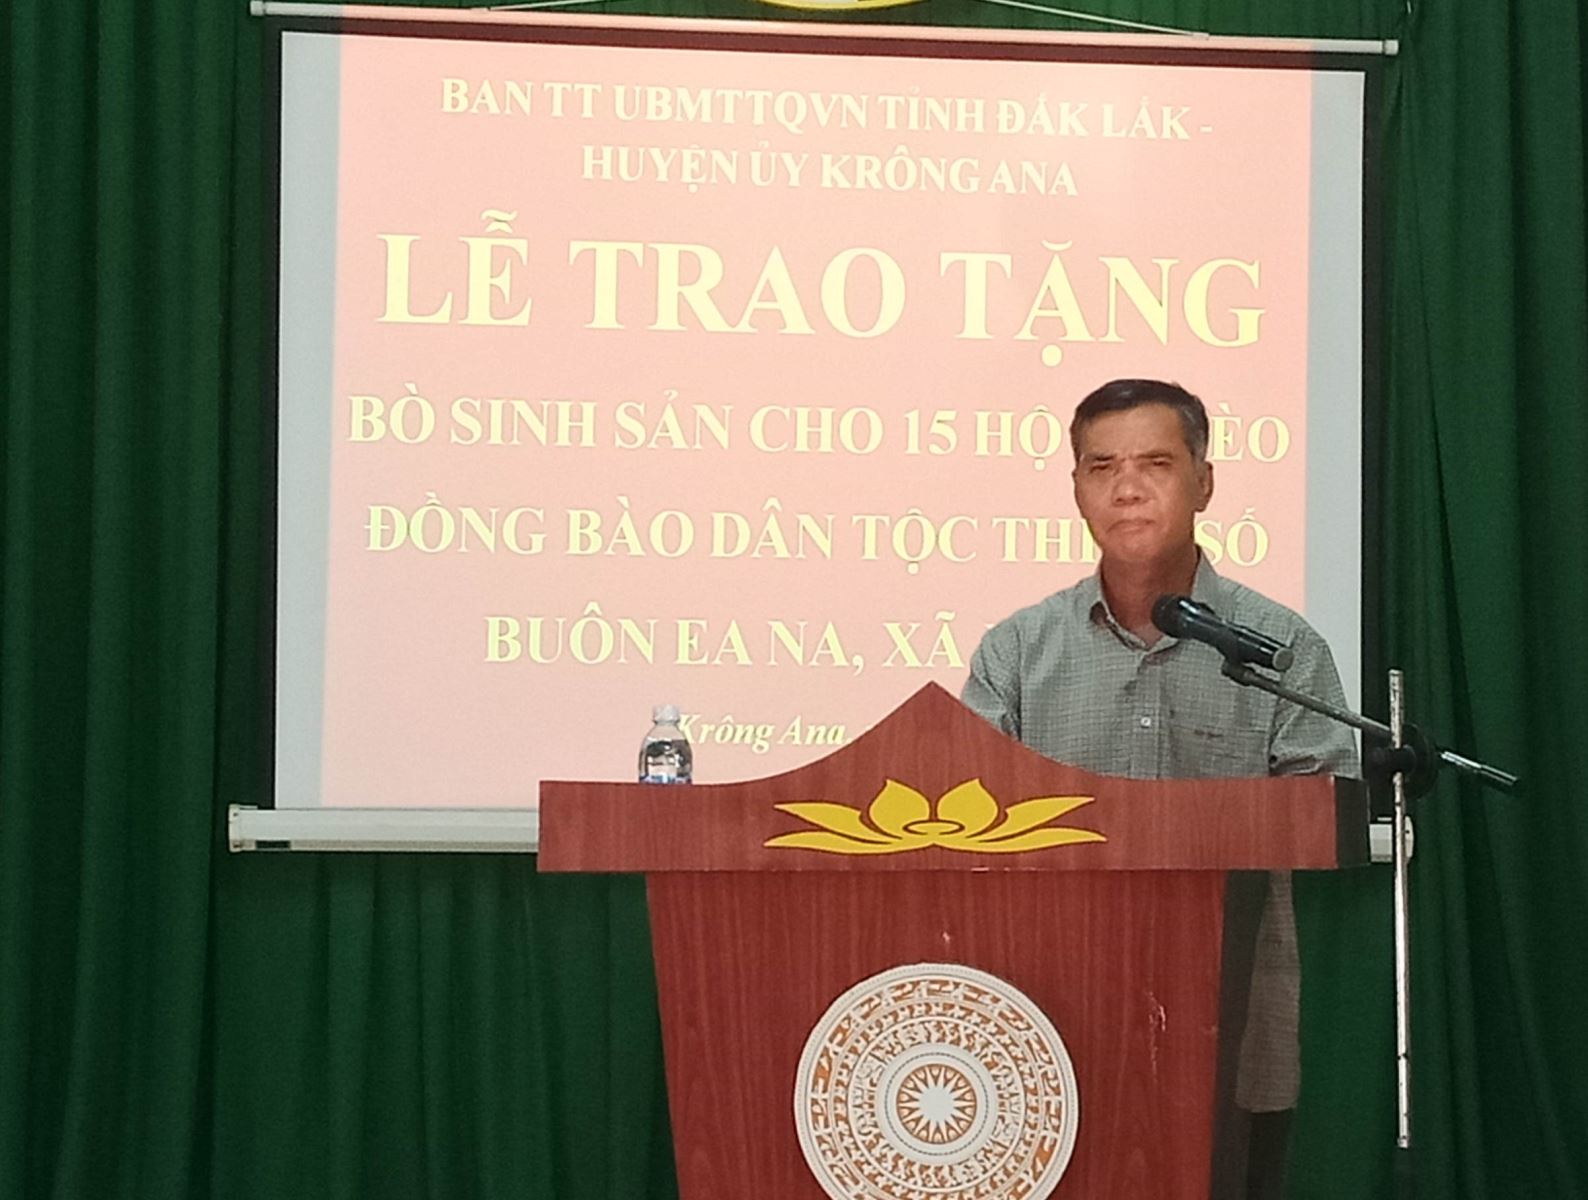 Ủy ban MTTQ Việt Nam tỉnh Đắk Lắk và Huyện ủy Krông Ana trao tặng bò sinh sản cho hộ nghèo đồng bào dân tộc thiểu số Buôn Ea Na, xã Ea Na